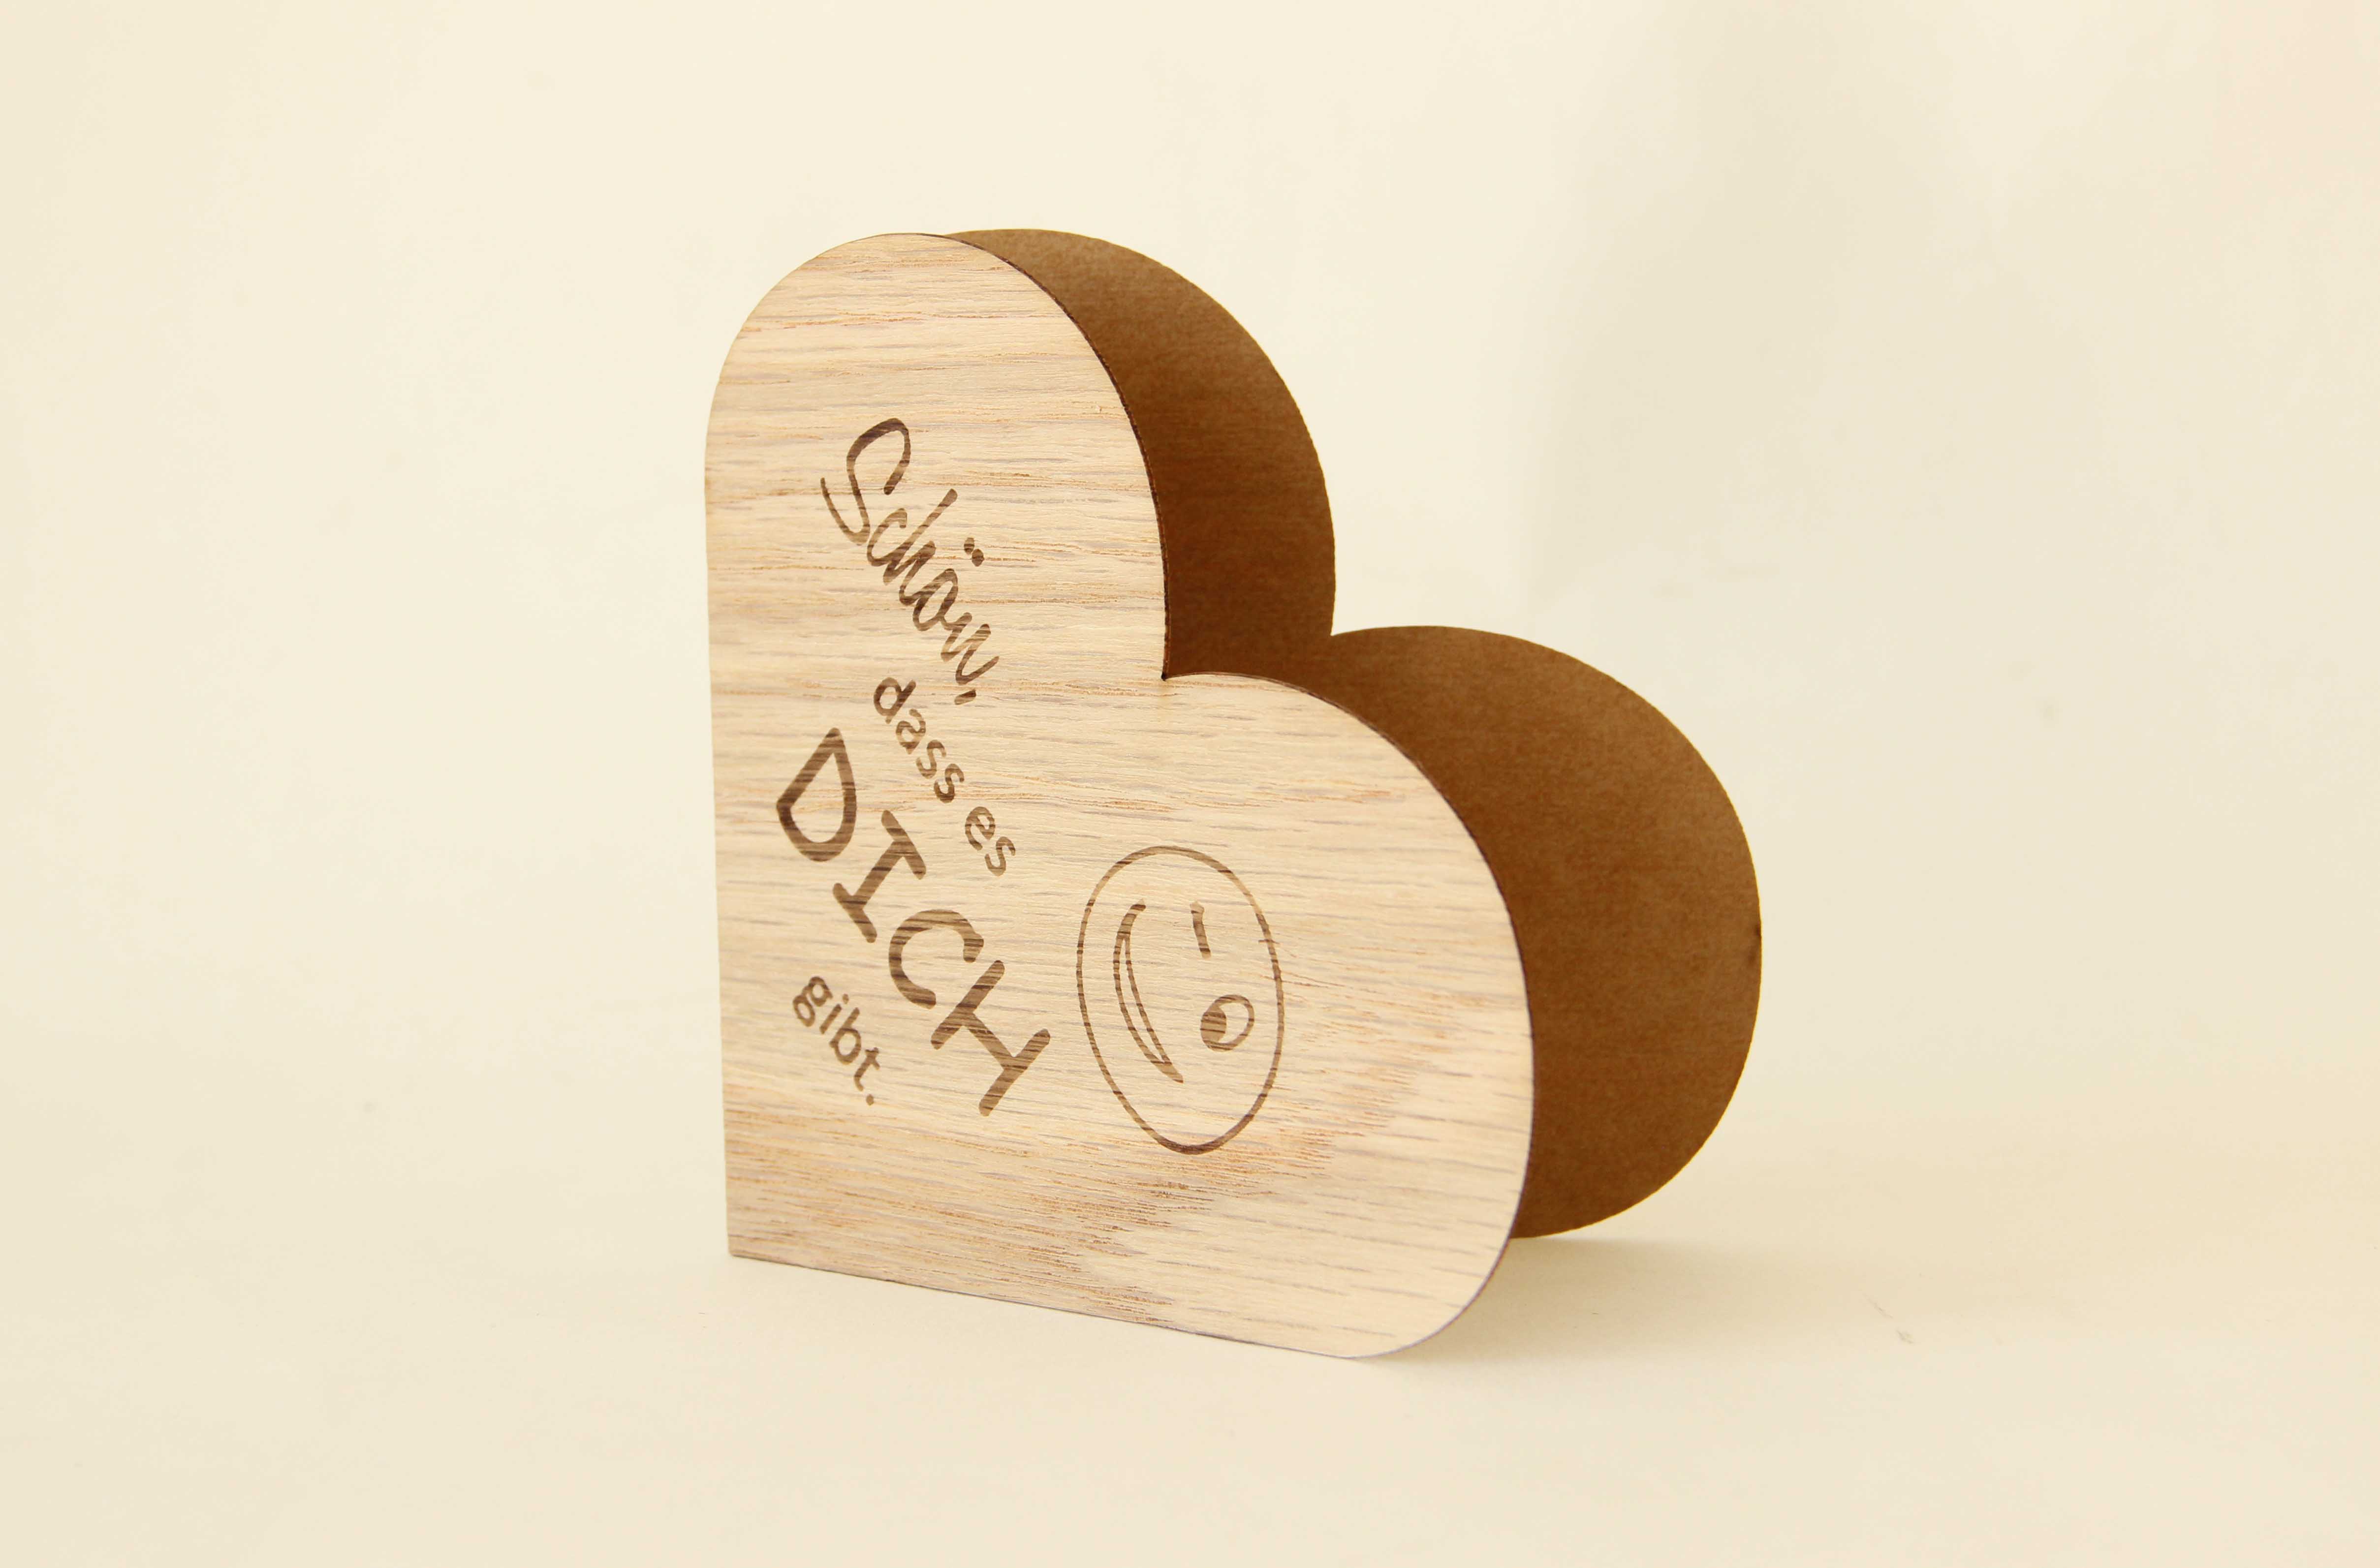 Holzgrusskarten - Herzkarte "Schön dass es dich gibt" aus Eiche, Zwinkersmiley, Dankeskarte, Geschenkkarte